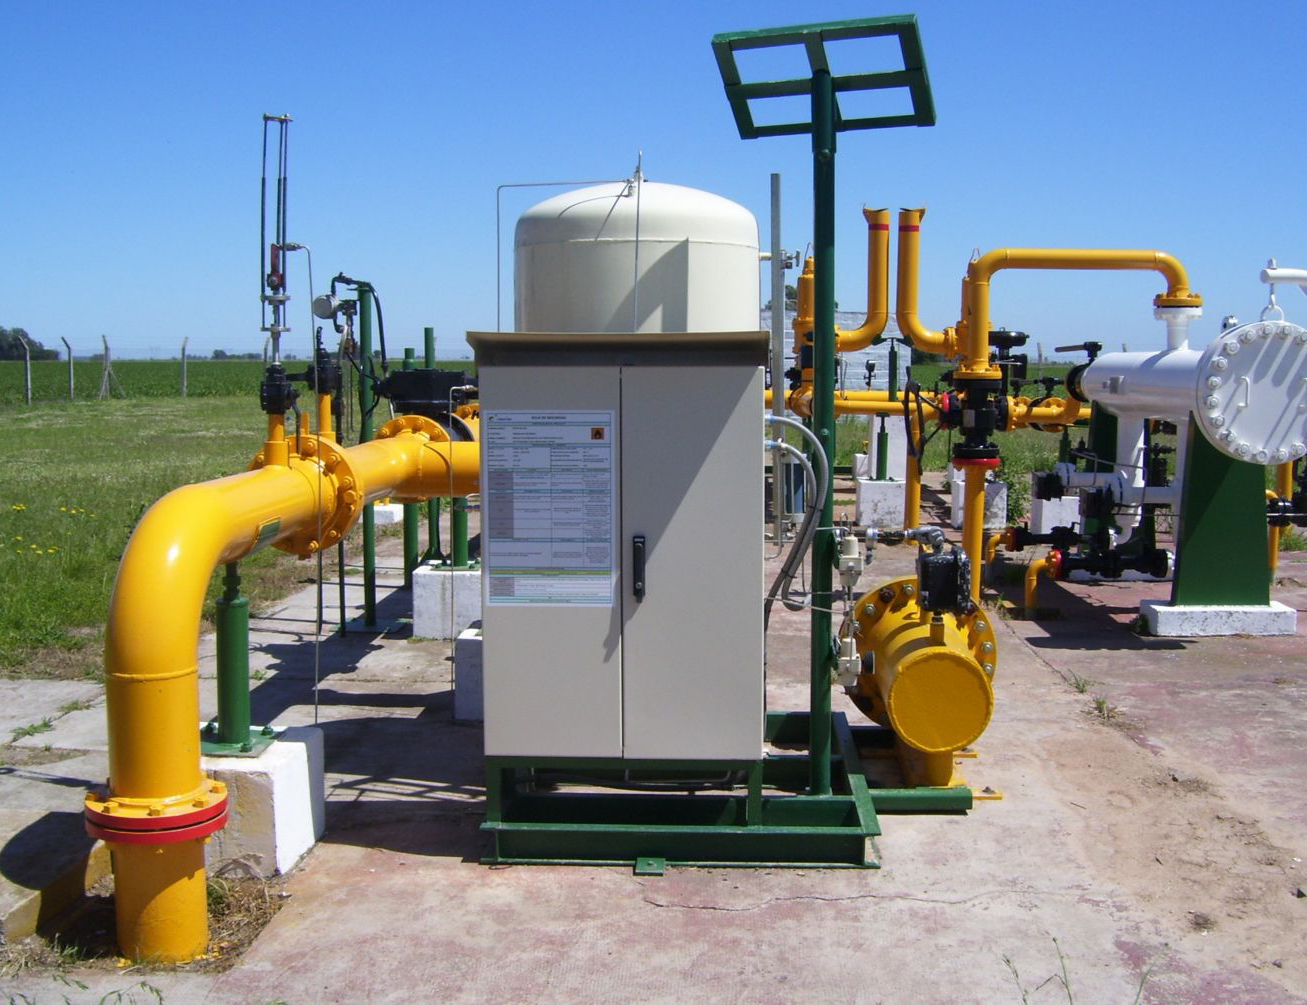 LITORAL GAS, equipos de odorización para la seguridad del servicio